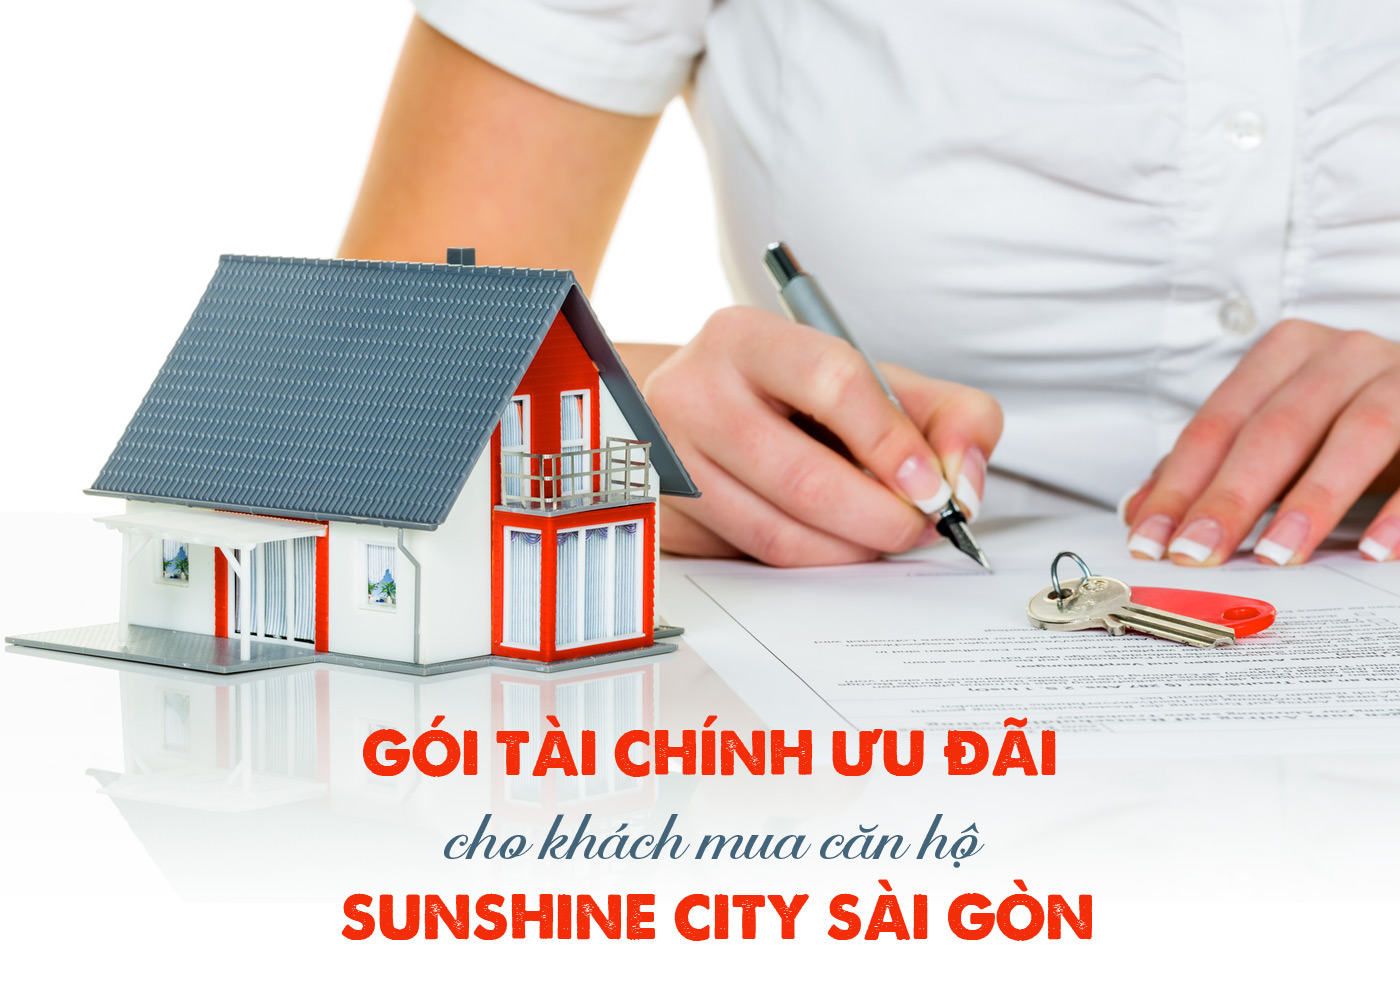 Gói tài chính ưu đãi cho khách mua căn hộ Sunshine City Sài Gòn - Ảnh 1